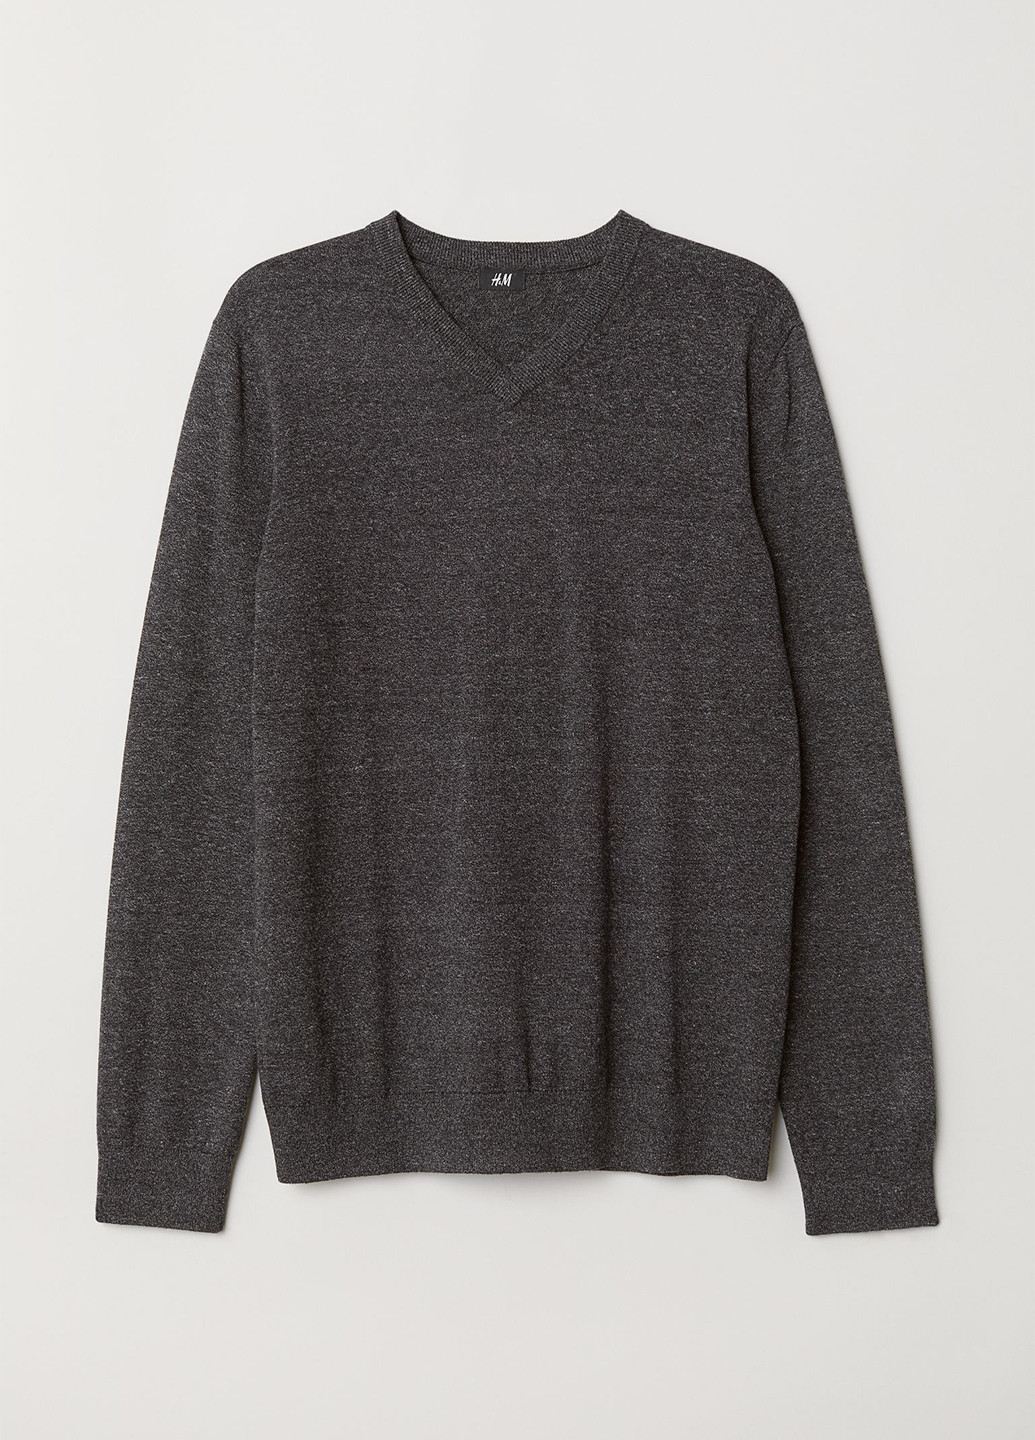 Графитовый демисезонный пуловер пуловер H&M